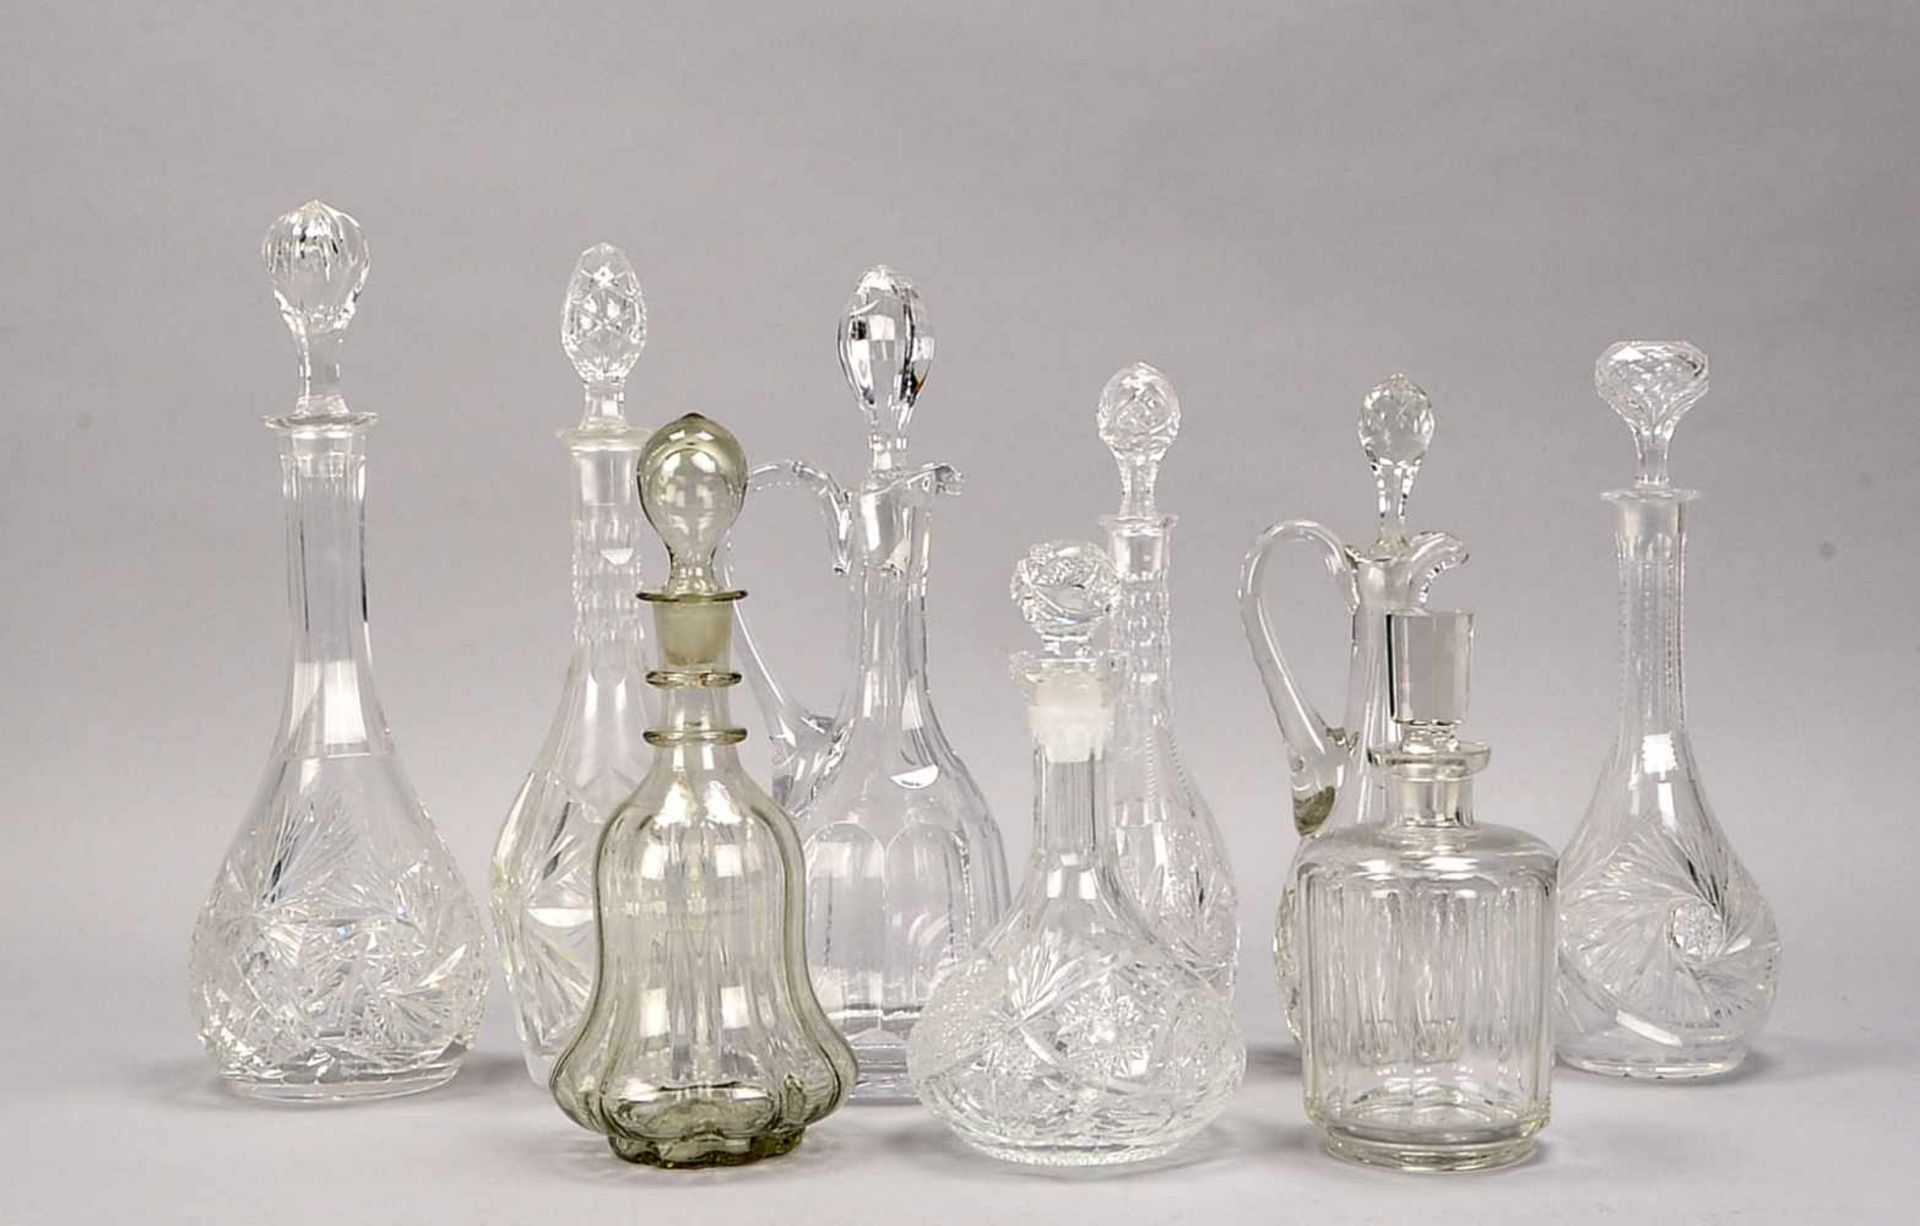 Glaskaraffen-Lot, Kristallglas, verschiedene Größen und Ausführungen, 9 Stück; Höhe 20 cm - Höhe